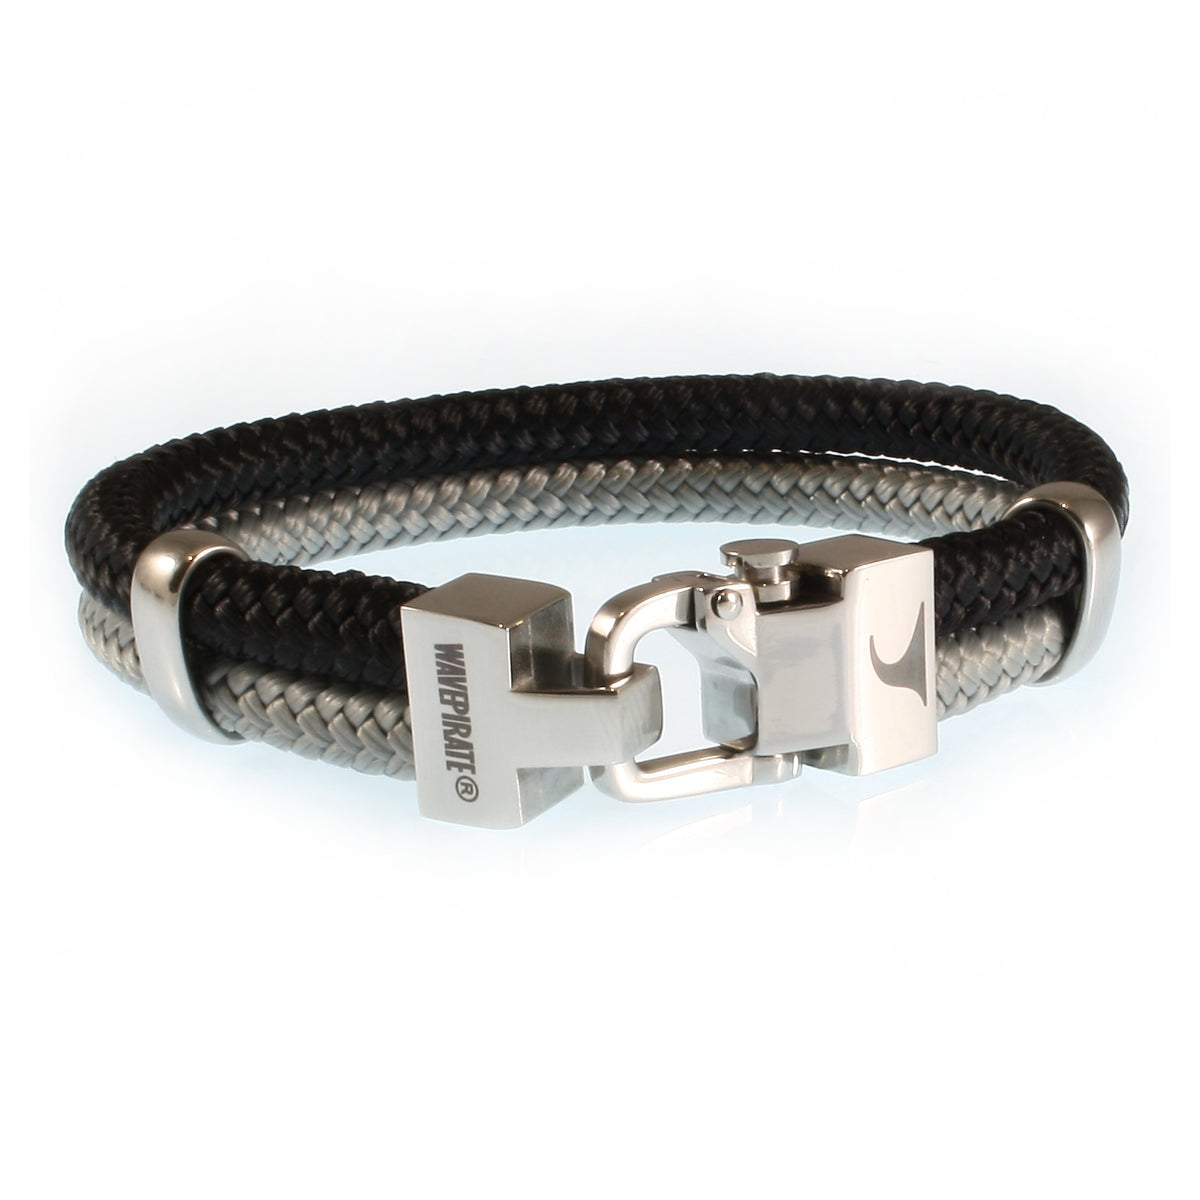 Herren-Segeltau-Armband-Turn-schwarz-grau-geflochten-Edelstahlverschluss-vorn-wavepirate-shop-st